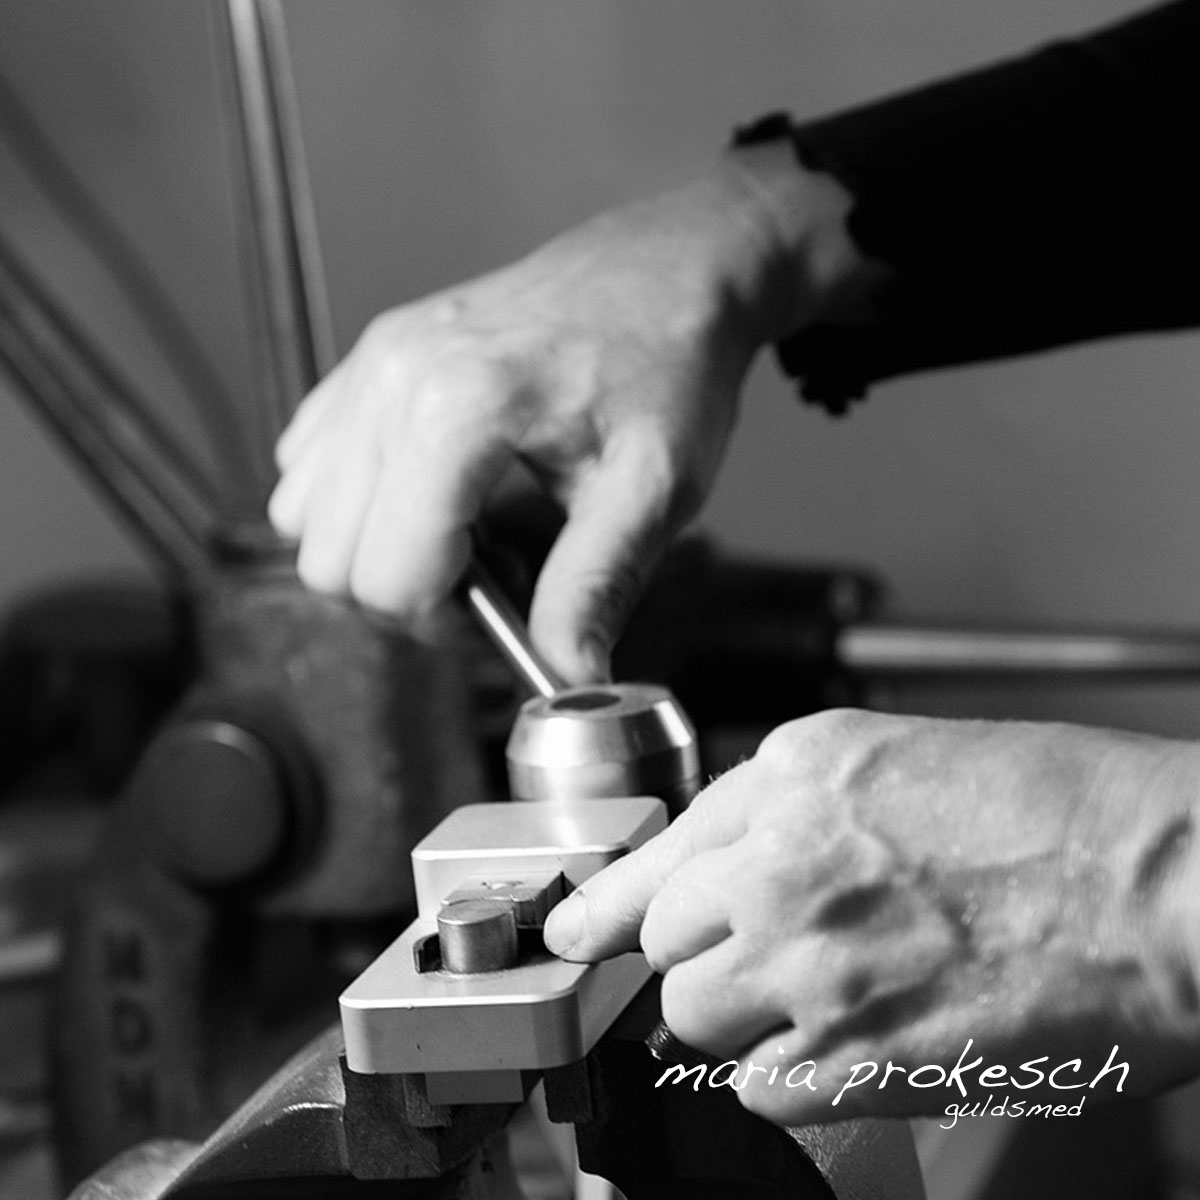 Guldsmed Maria Prokesch arbejder i værkstedet med håndlavede smykker og unikke vielsesringe. Ægte håndværk med guld og diamanter. Dansk smykkedesign med design og personlige valg. Billede viser proces hvor håndlavet guldring bliver bukket.